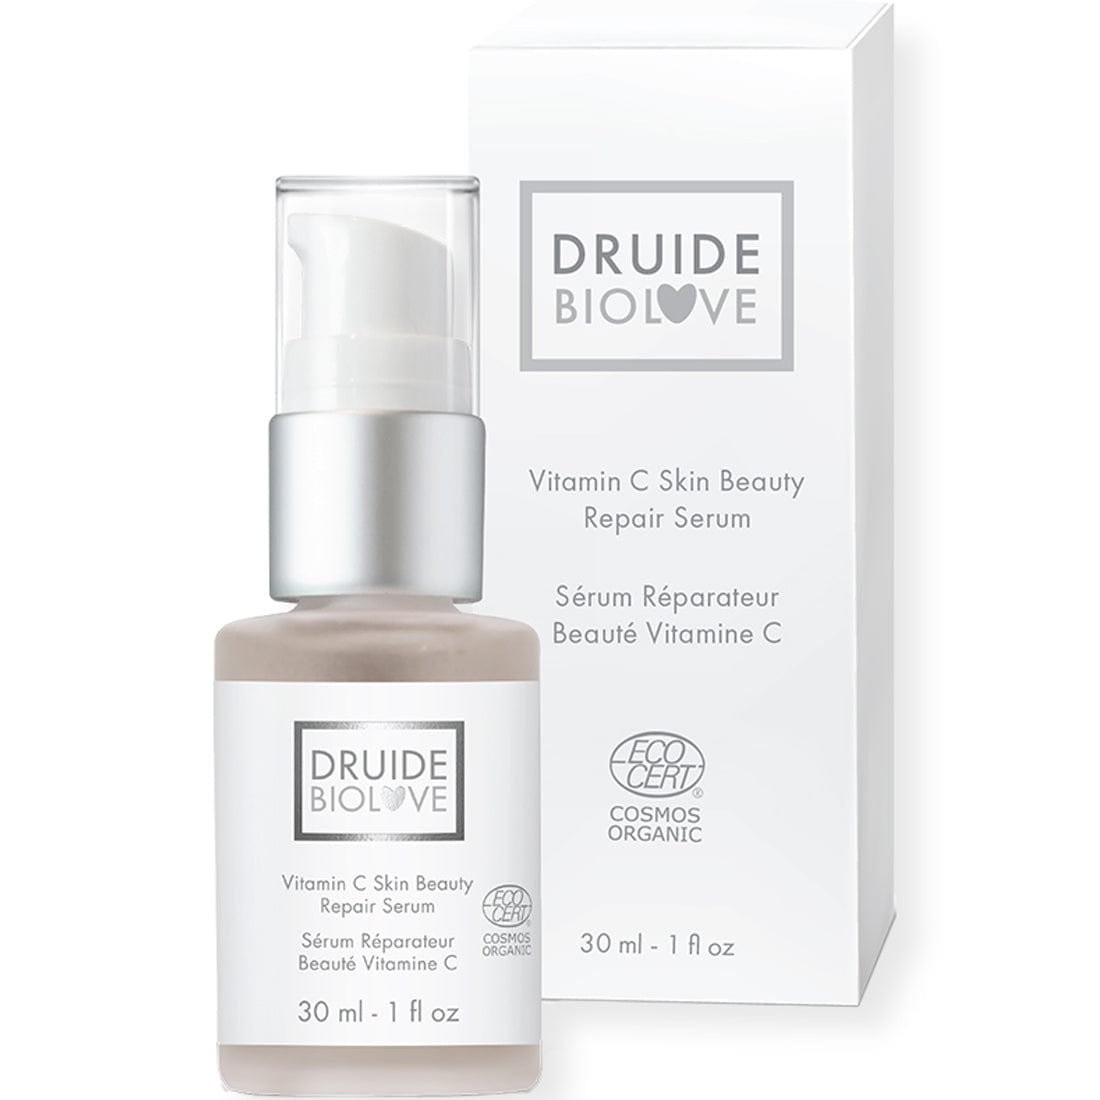 Druide Vitamin C Skin Beauty Repair Serum, 30ml